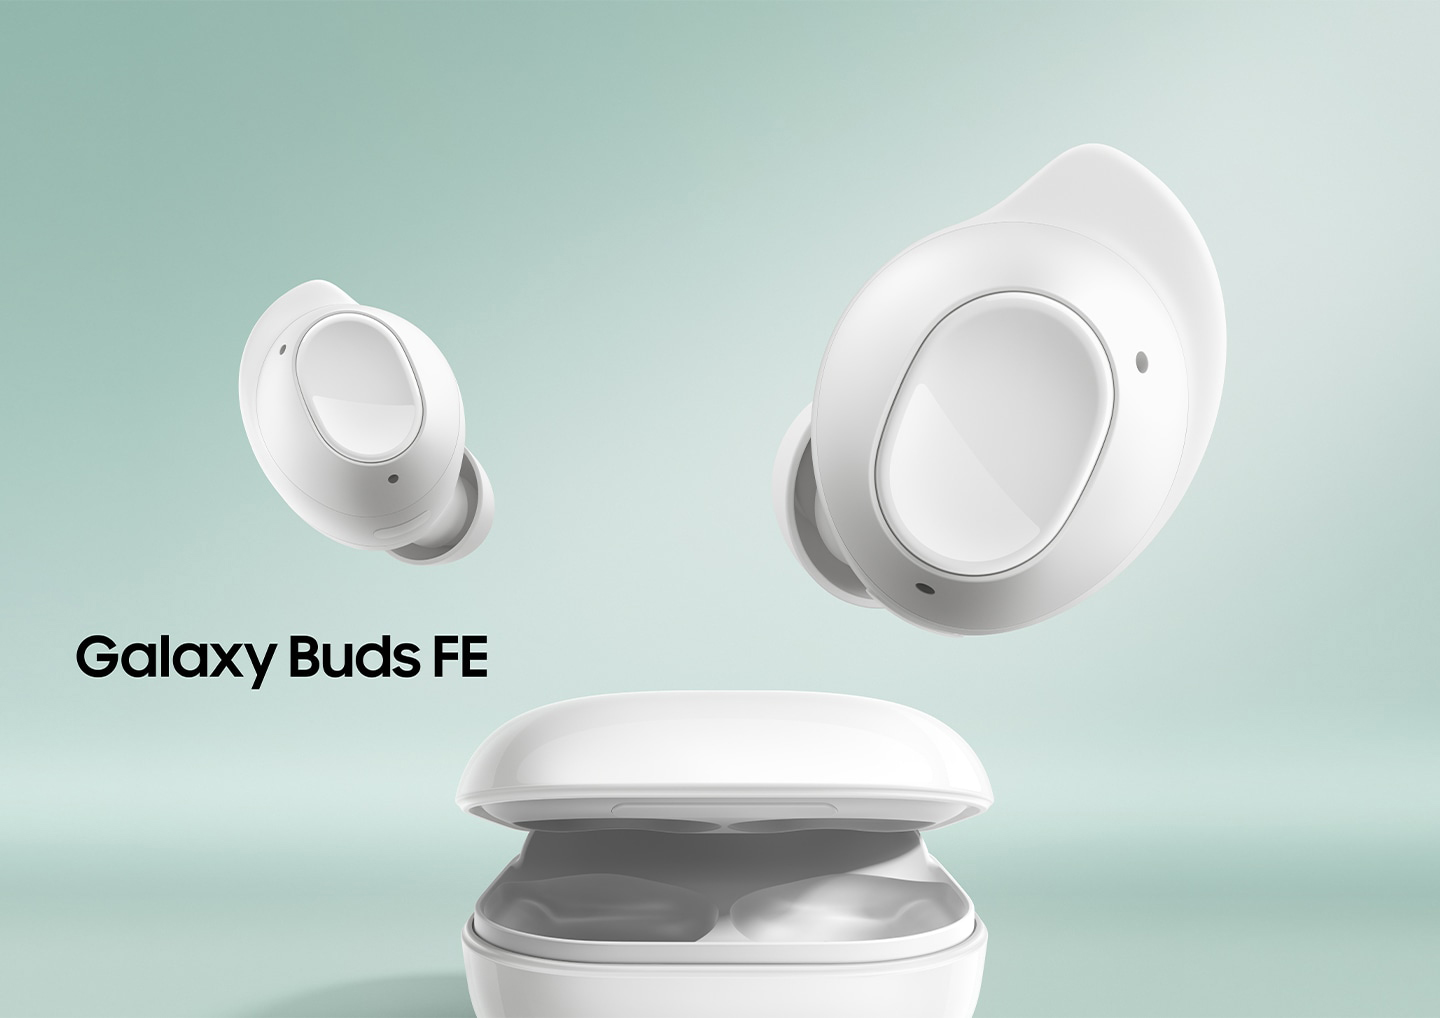 Les Samsung Galaxy Buds FE : réduction de bruit, haut-parleur intégré et fonction de localisation